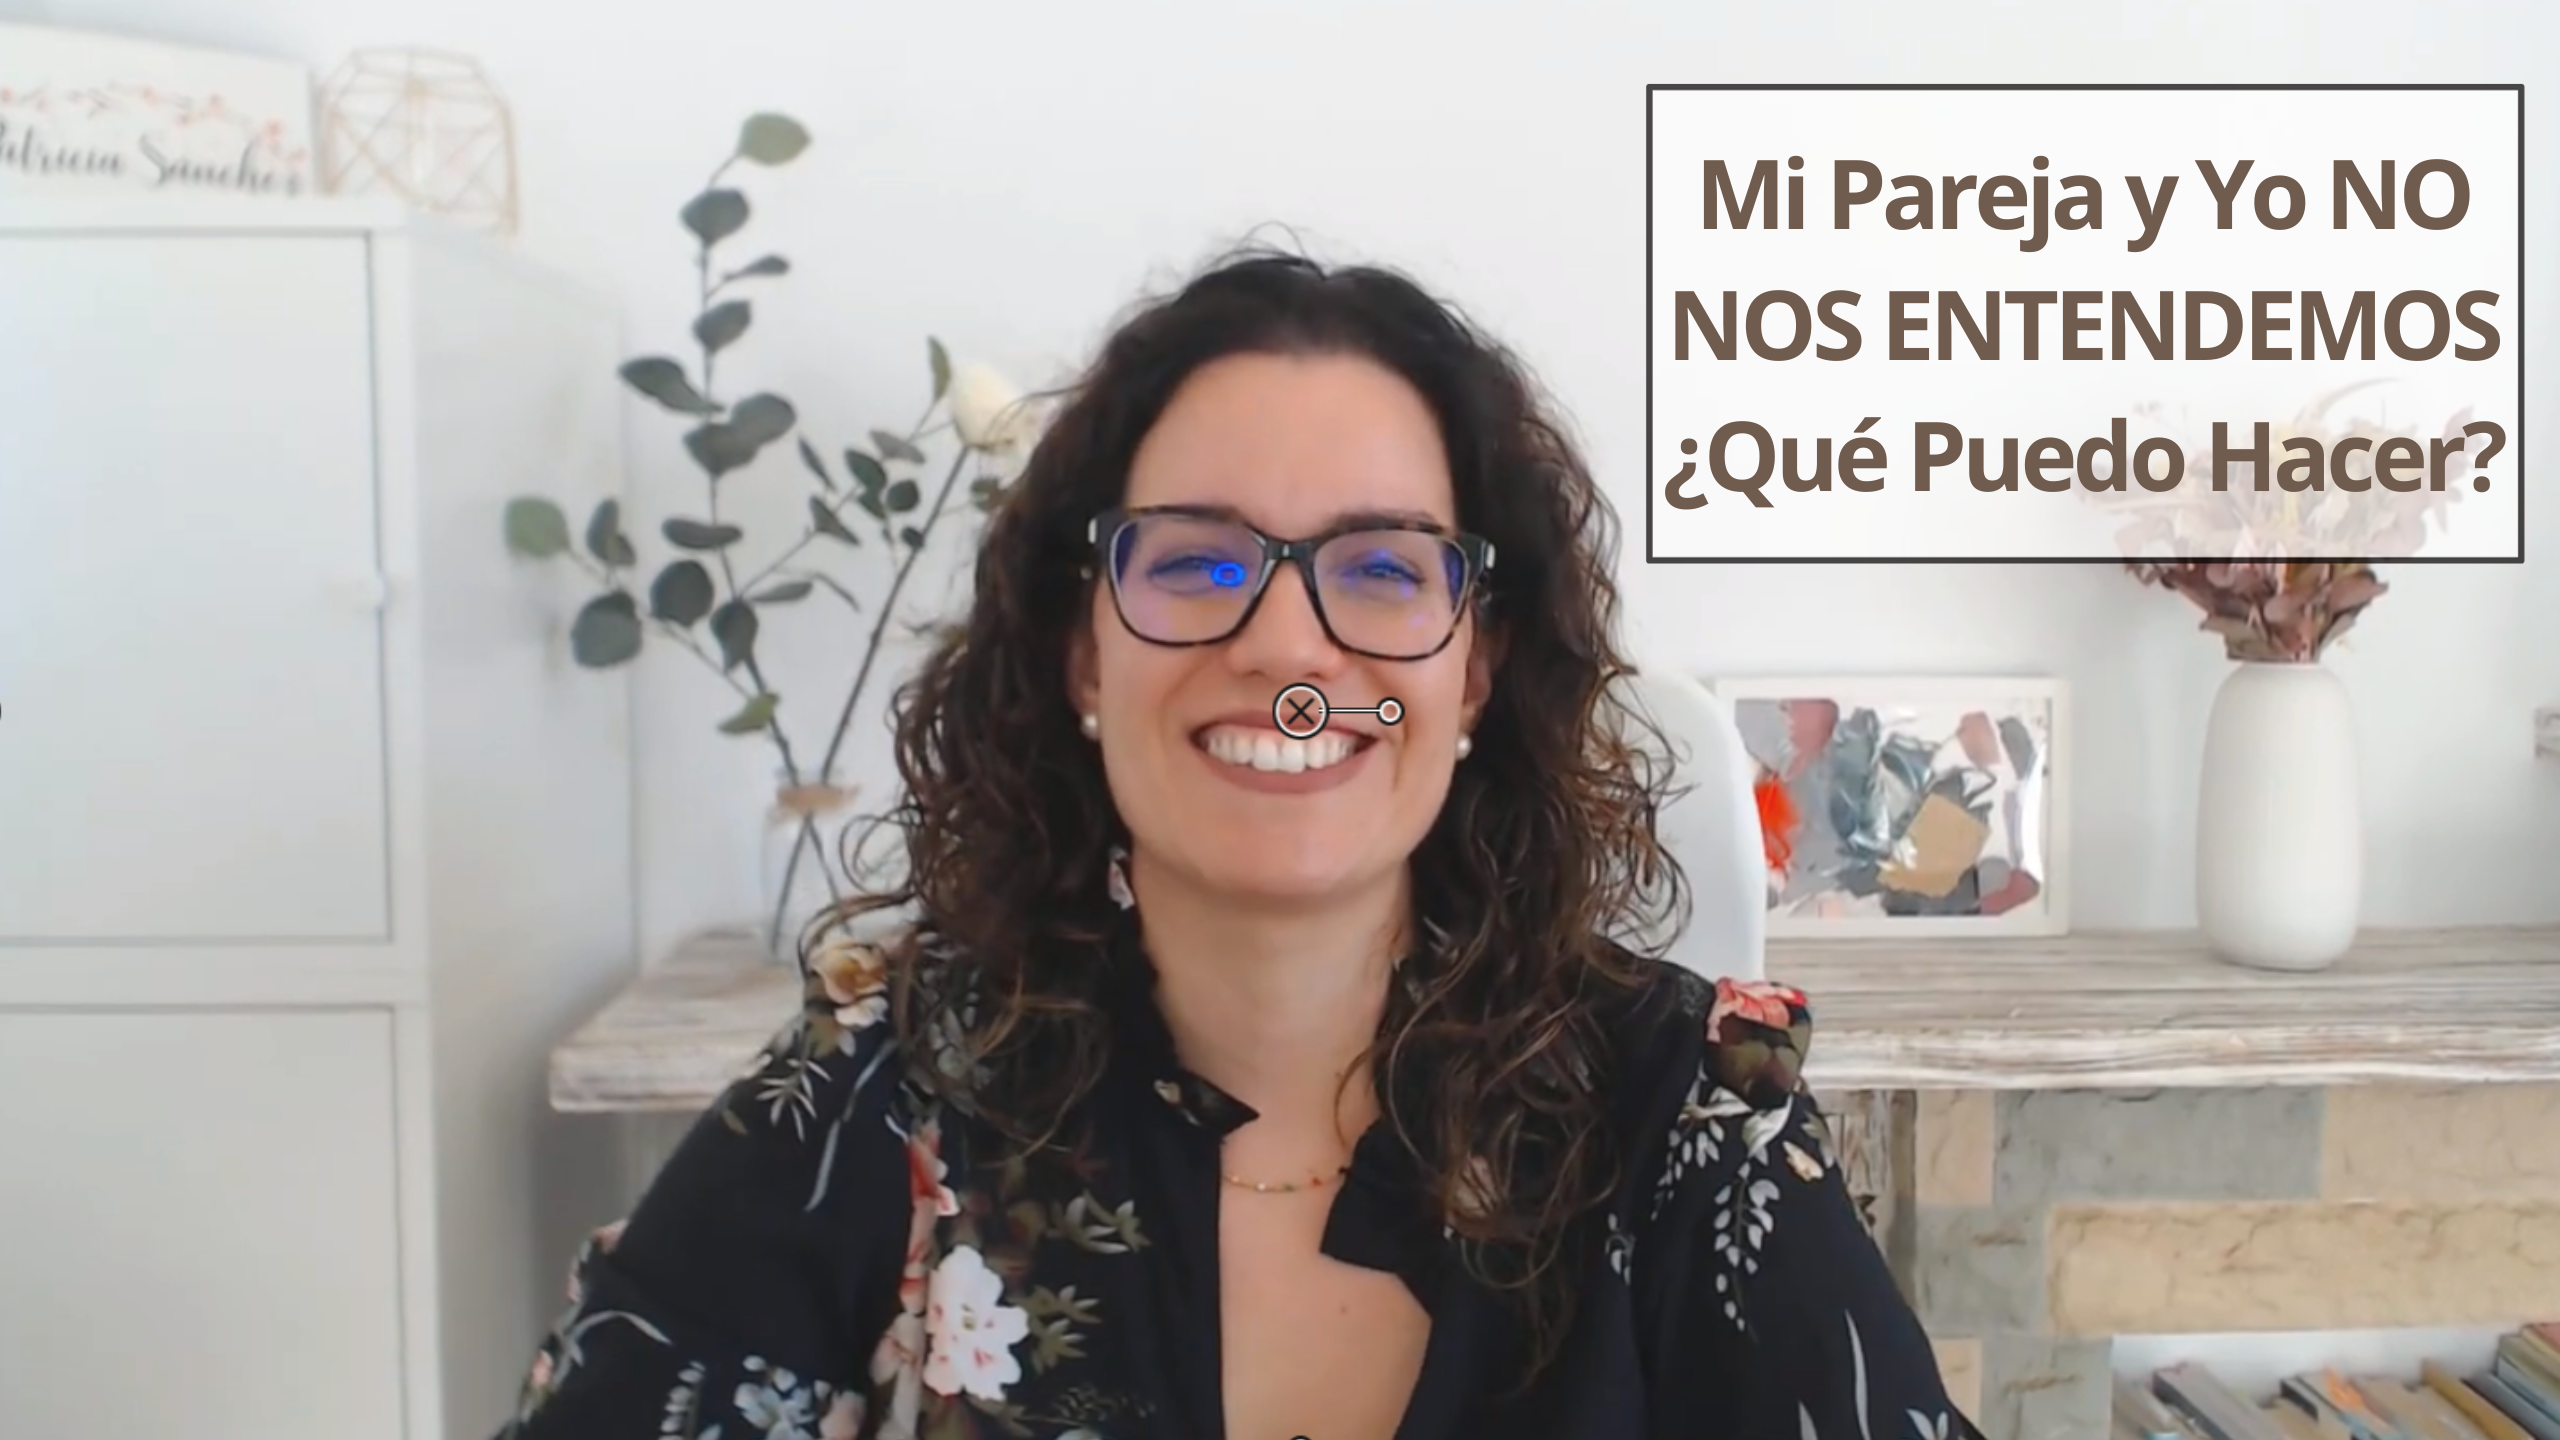 Patricia Sanchez Psicóloga - Podcast Vivir Tranquila EP 7 - Mi Pareja y Yo No Nos ENTENDEMOS